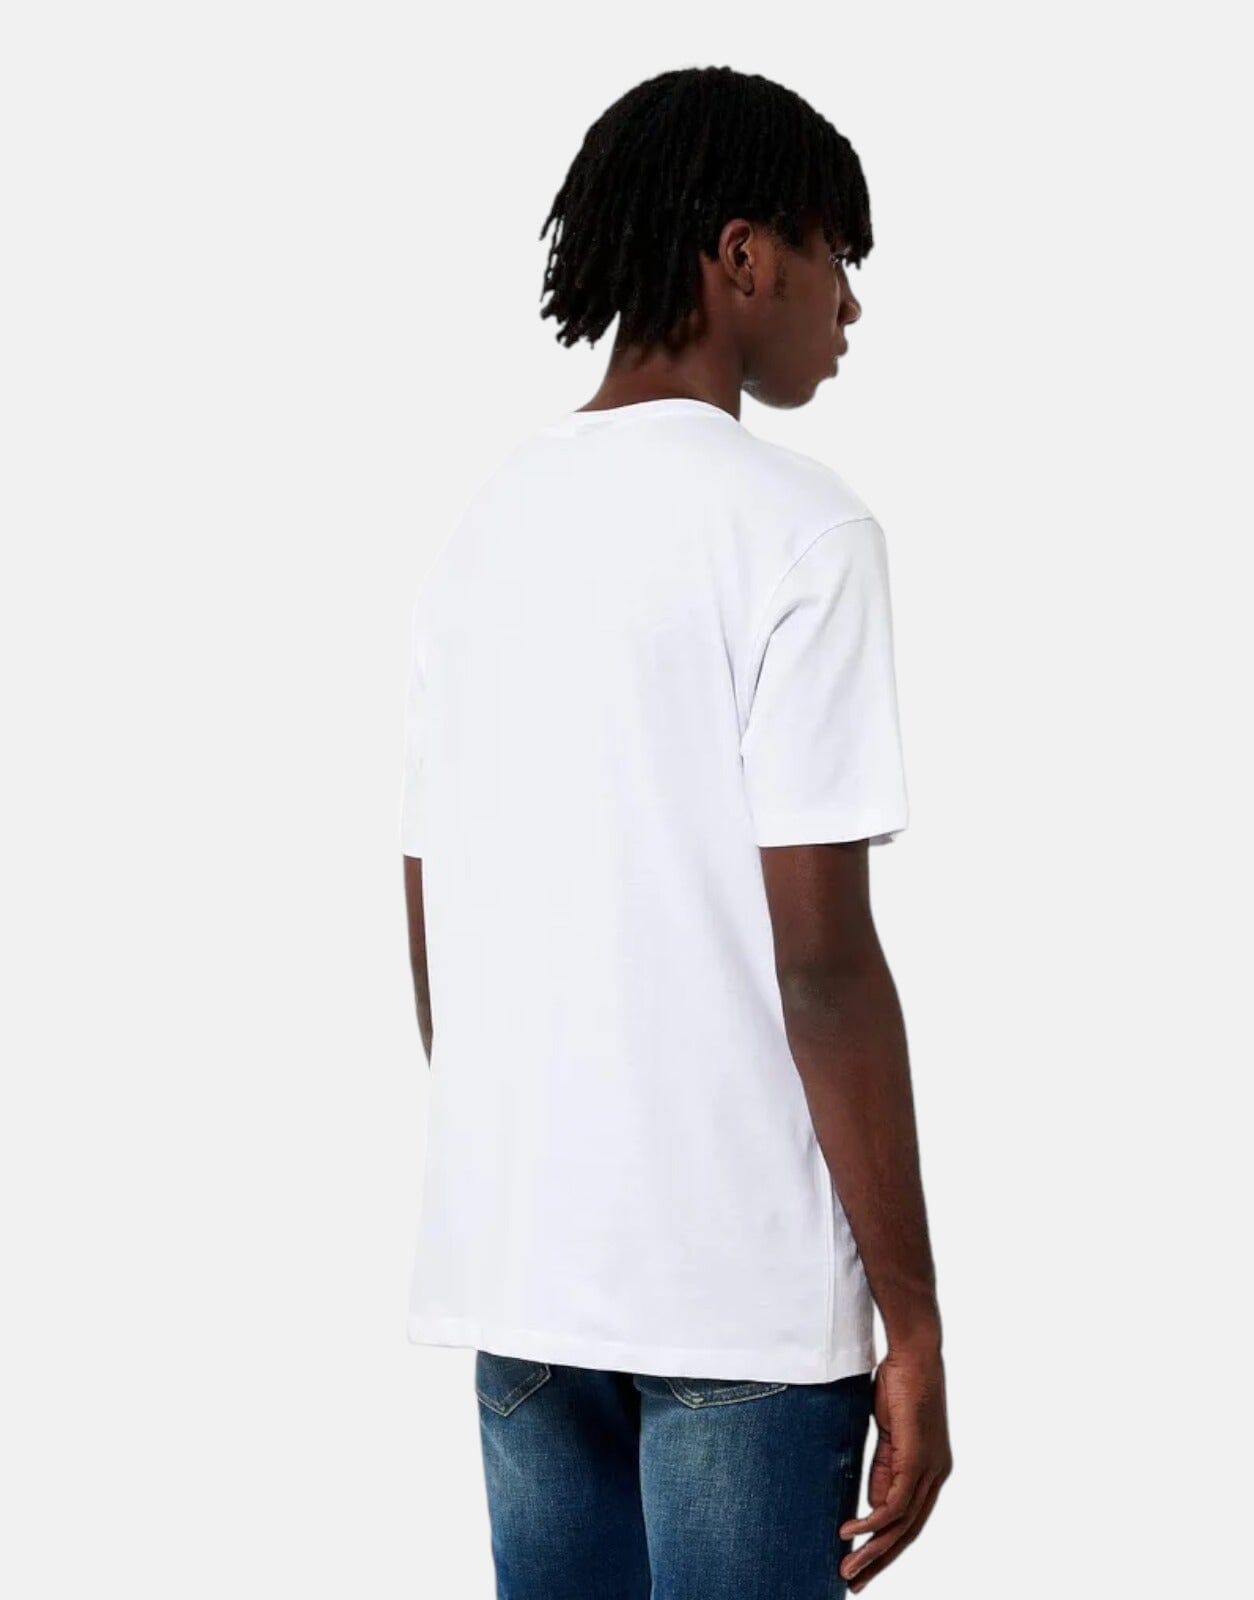 Clay White T-Shirt - Subwear